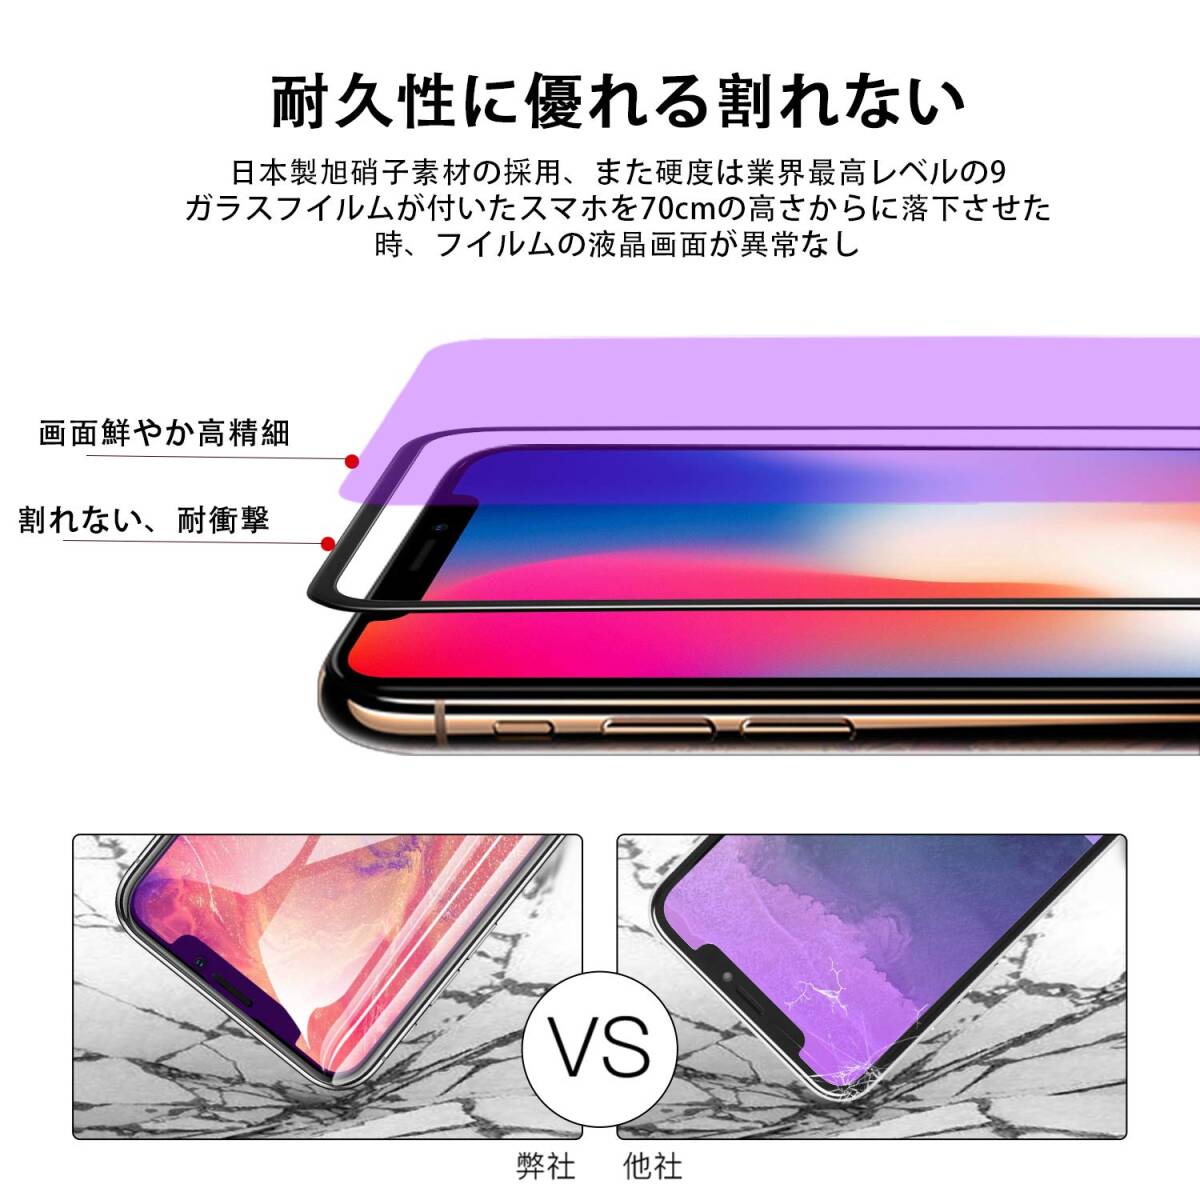 【特価商品】【ブルーライトカット】iPhone X/XS ガラスフィルム 2枚セットアイフォン X/XS 強化ガラス液晶保護フィル_画像5